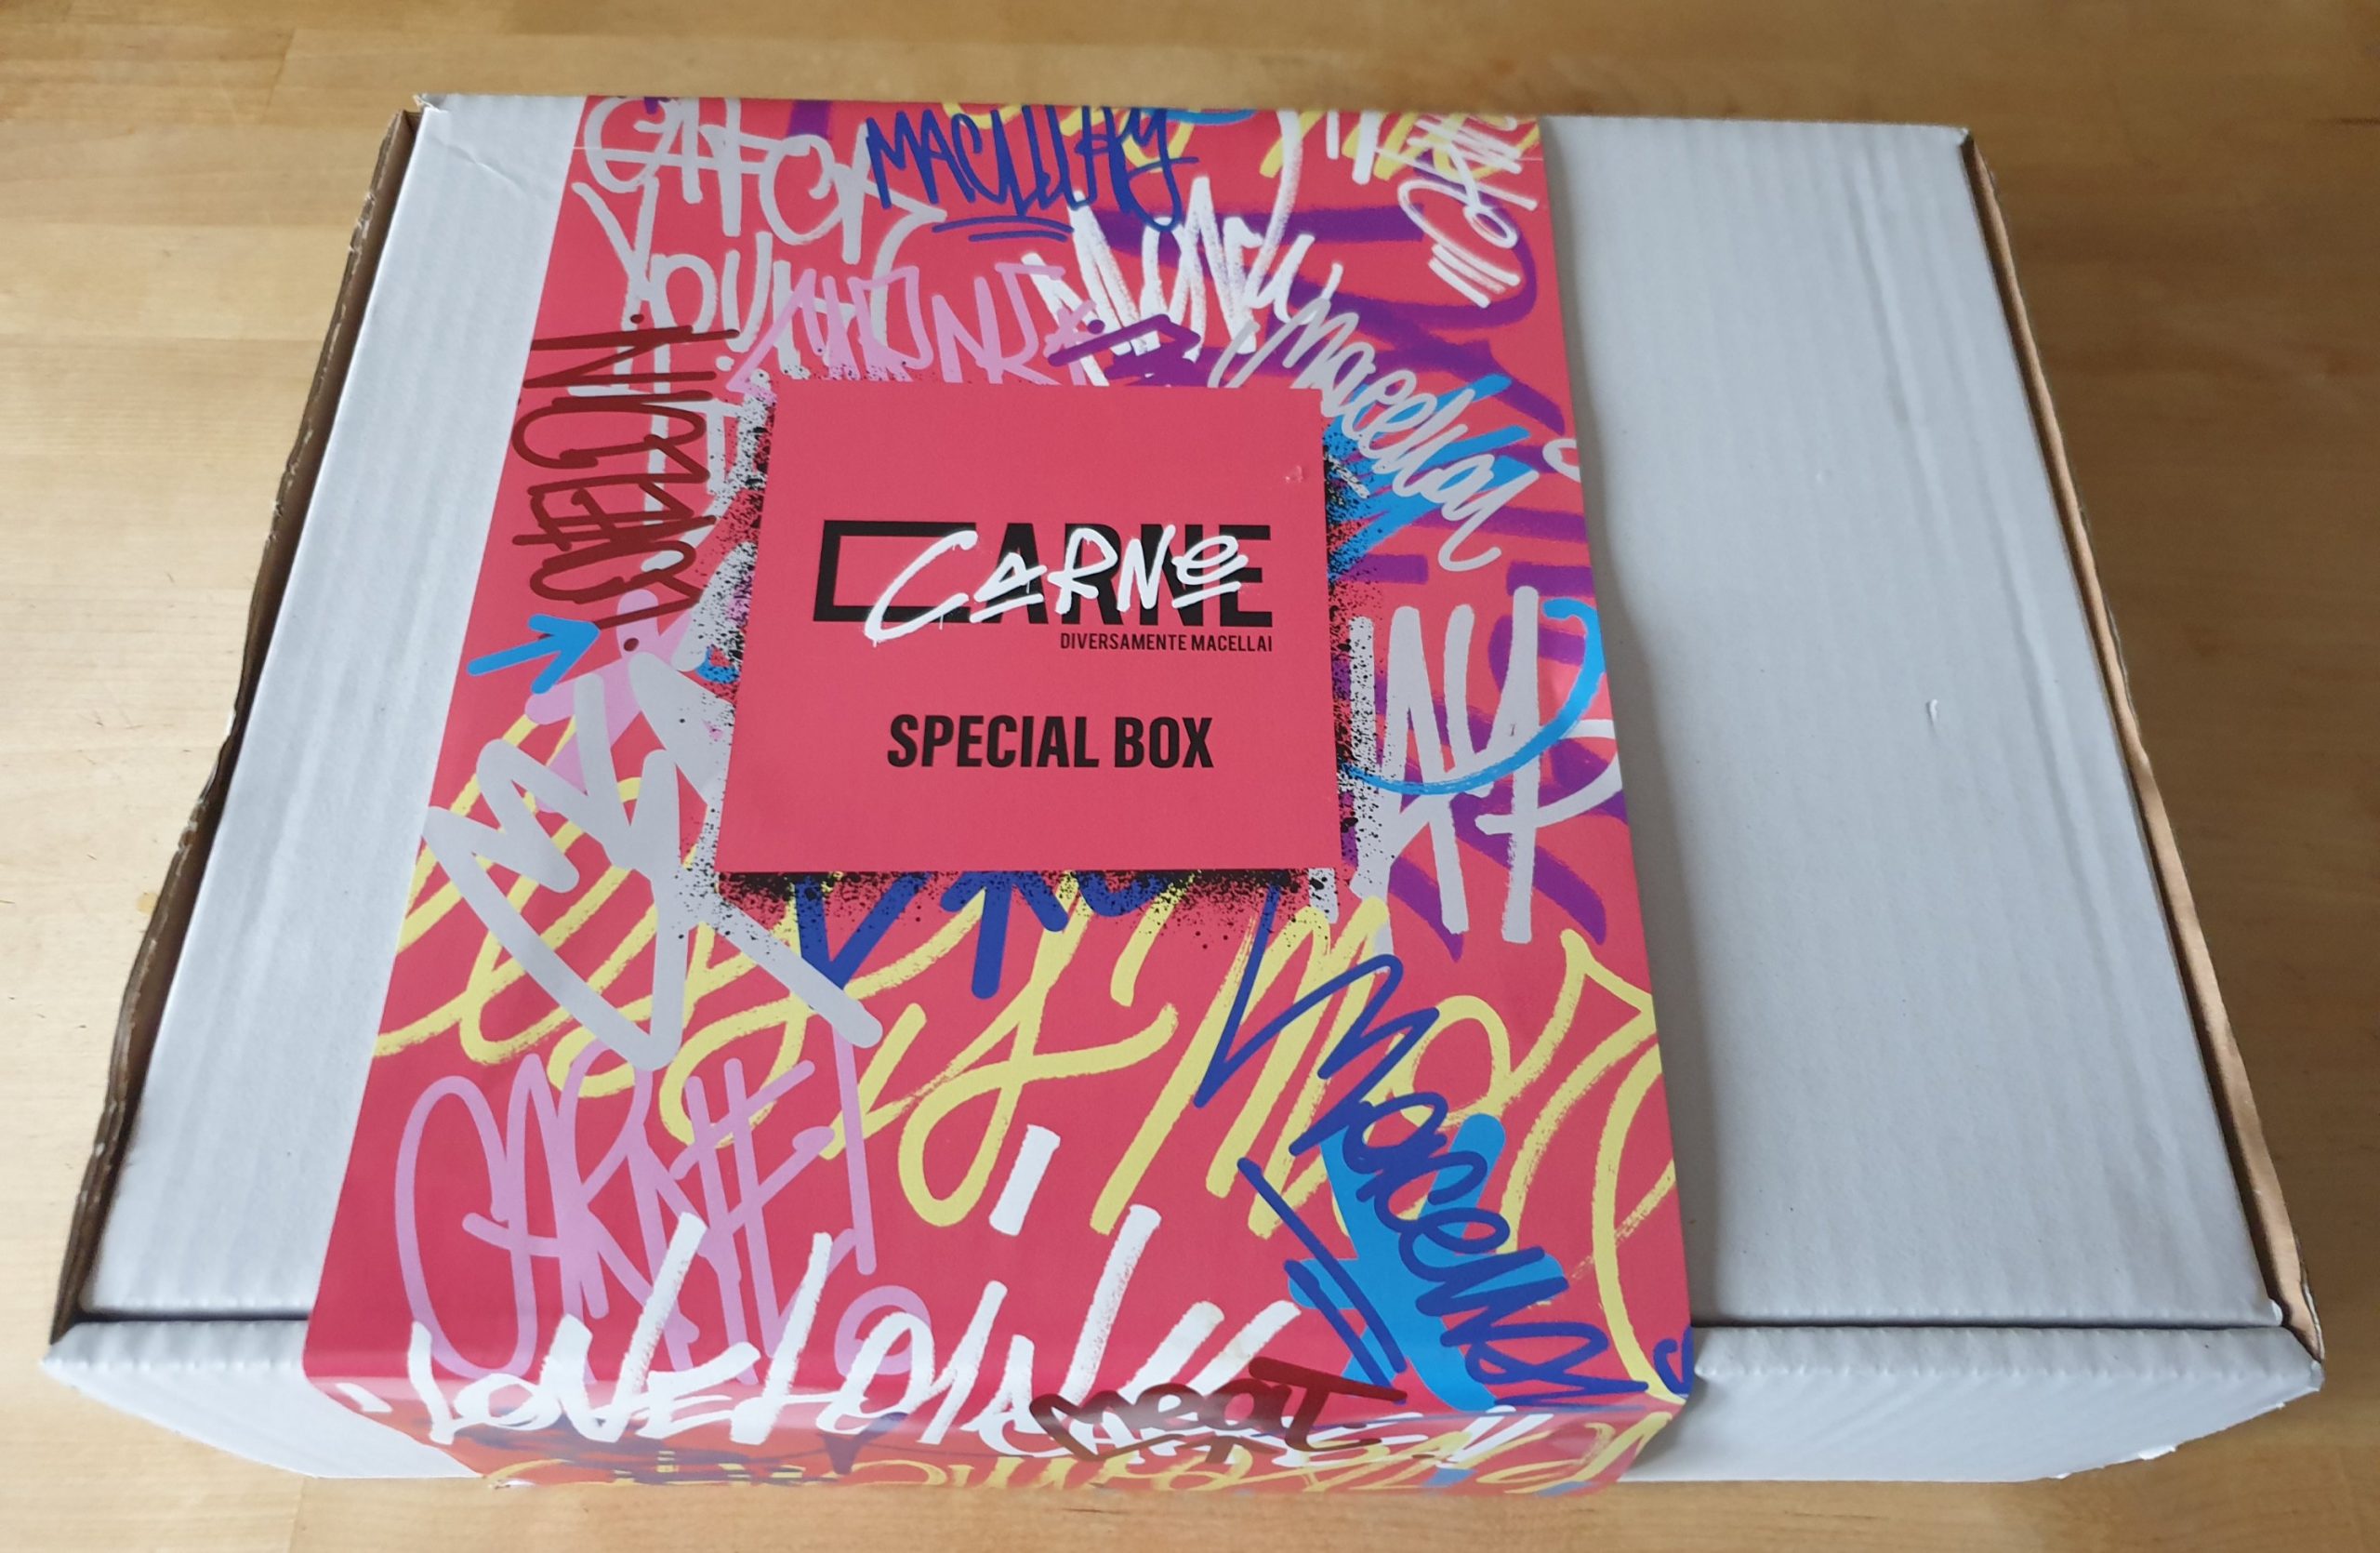 Arriva Special Box by “Carne, diversamente macellai”.